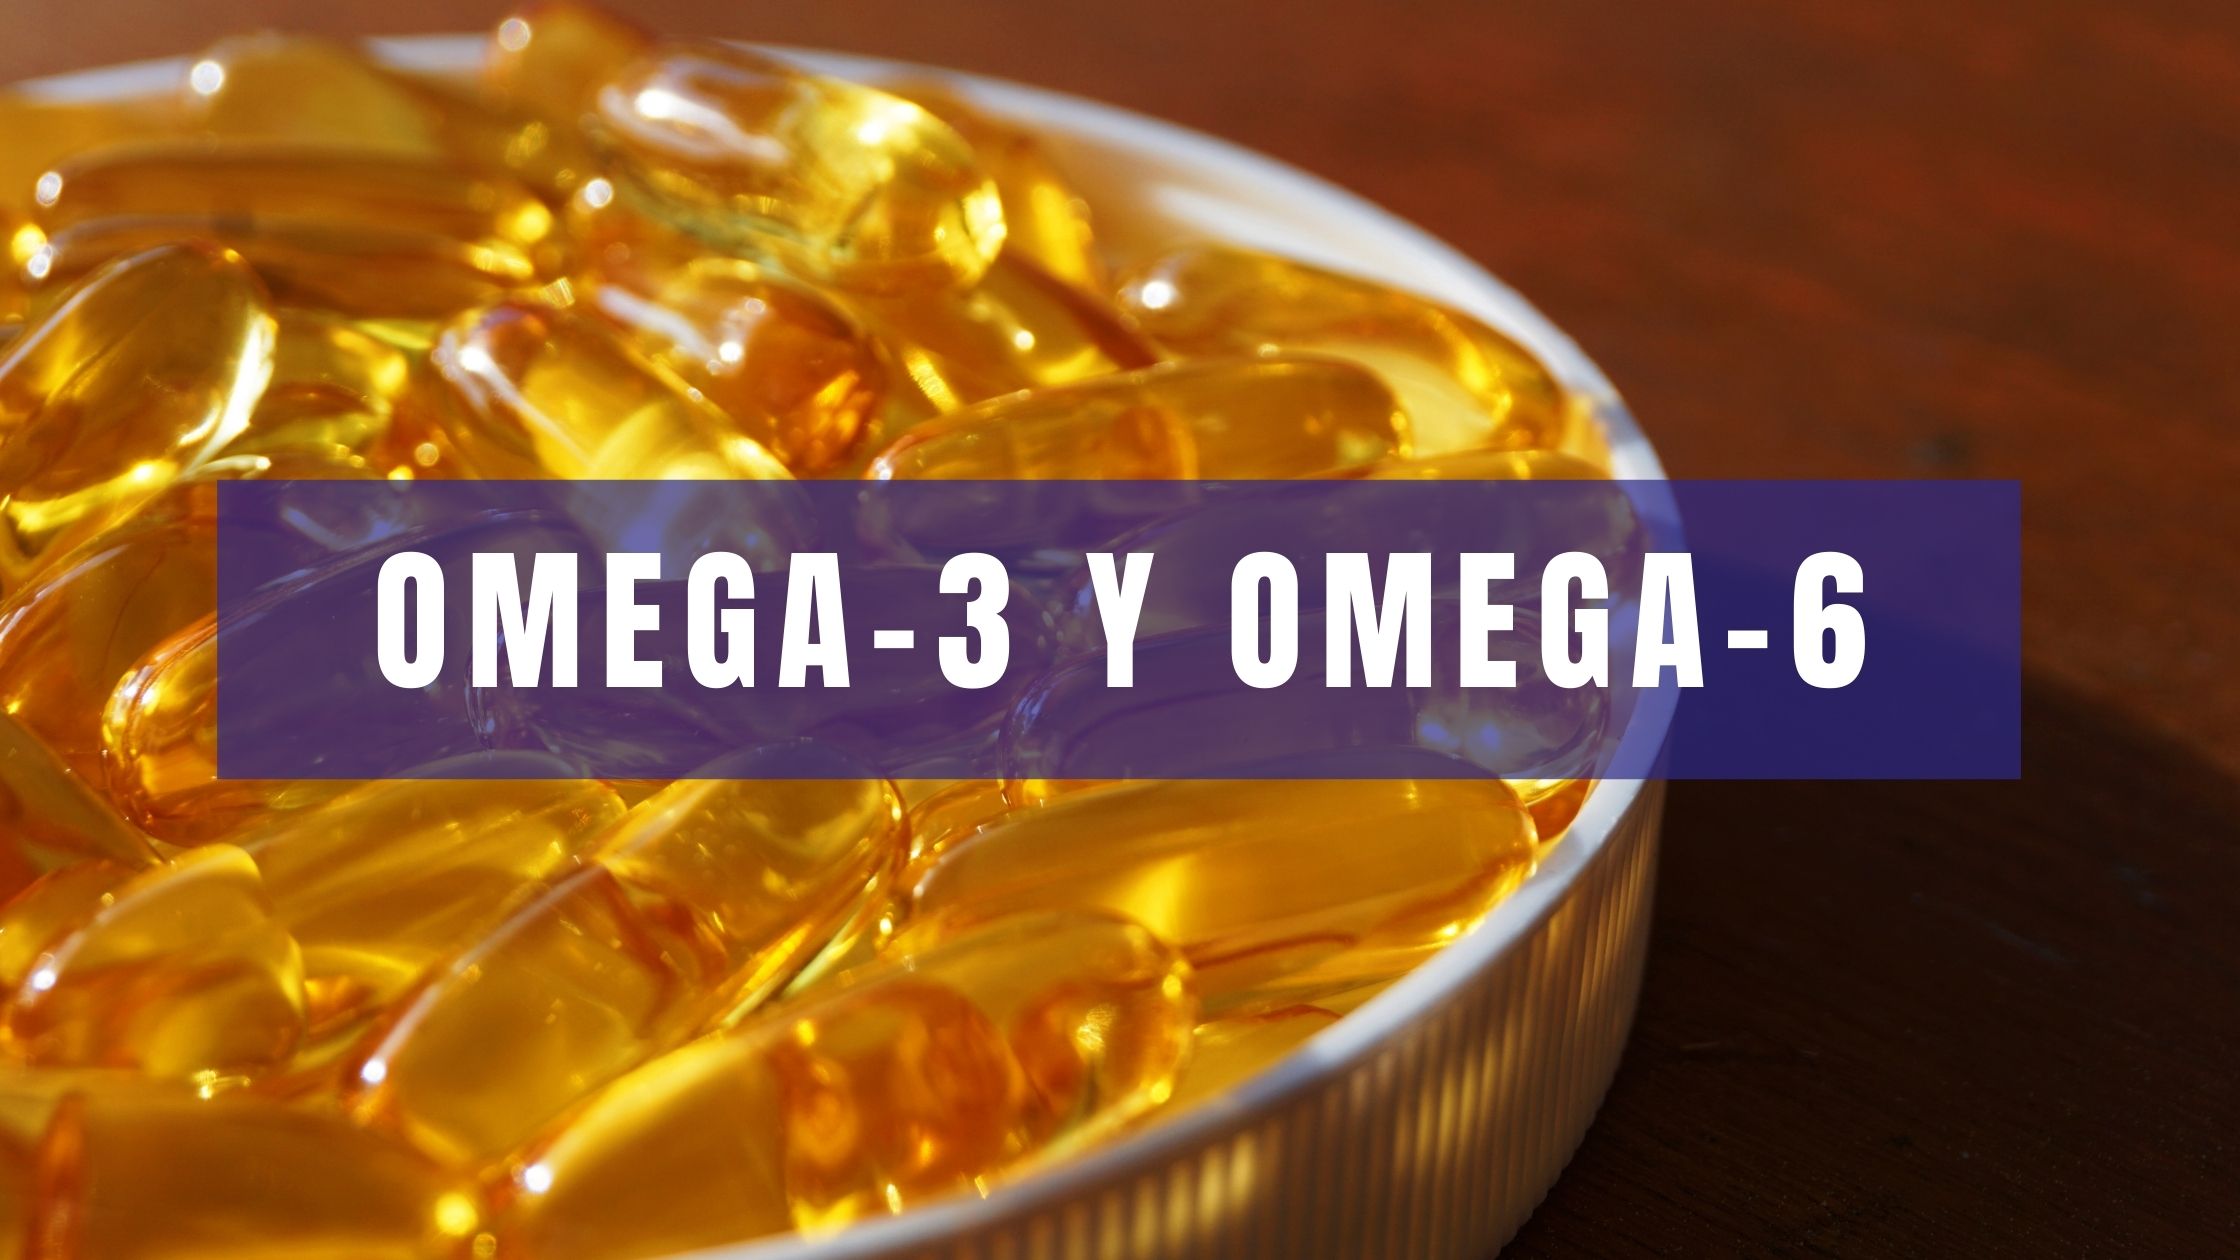 Omega-3 Omega-6